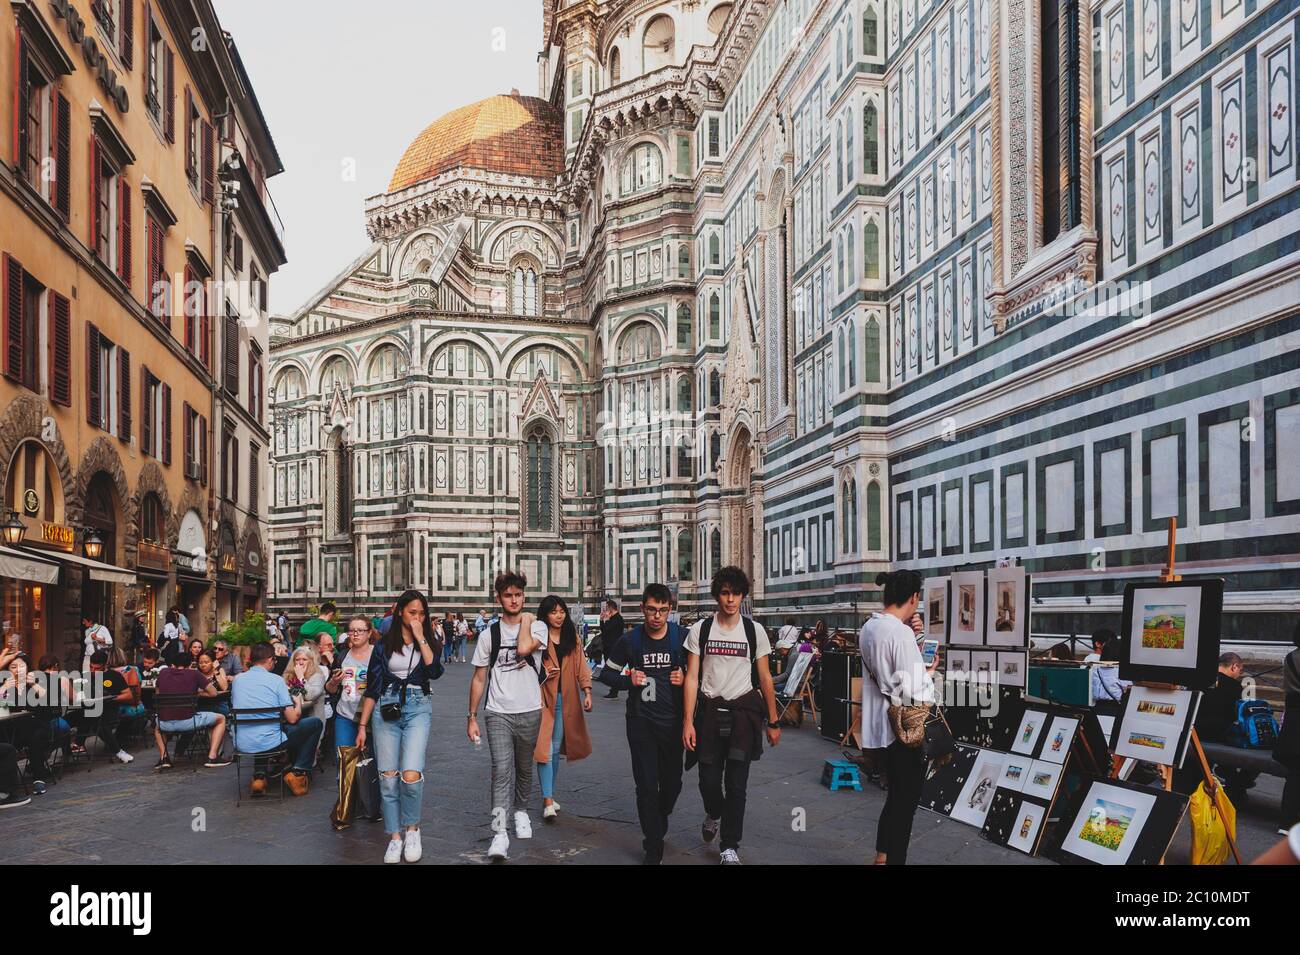 Kathedrale Santa Maria del Fiore, ein touristisches Wahrzeichen in der Altstadt von Florenz, Italien Stockfoto